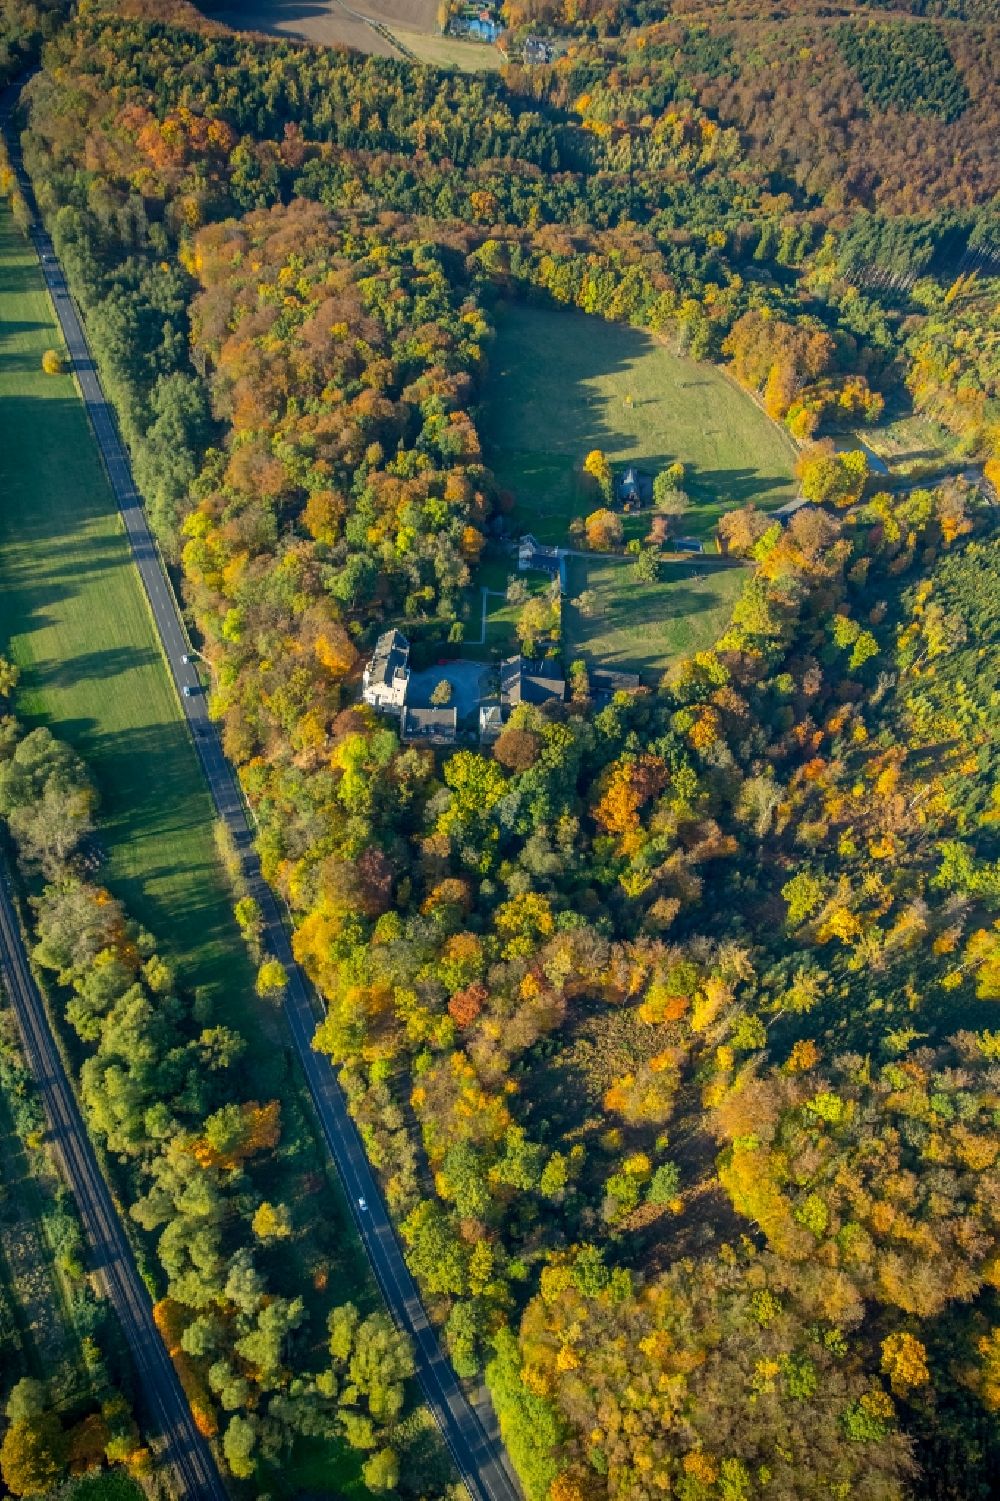 Luftaufnahme Herdecke - Gebäude und Schlosspark des Schloß Haus Mallinckrodt in Herdecke im Bundesland Nordrhein-Westfalen